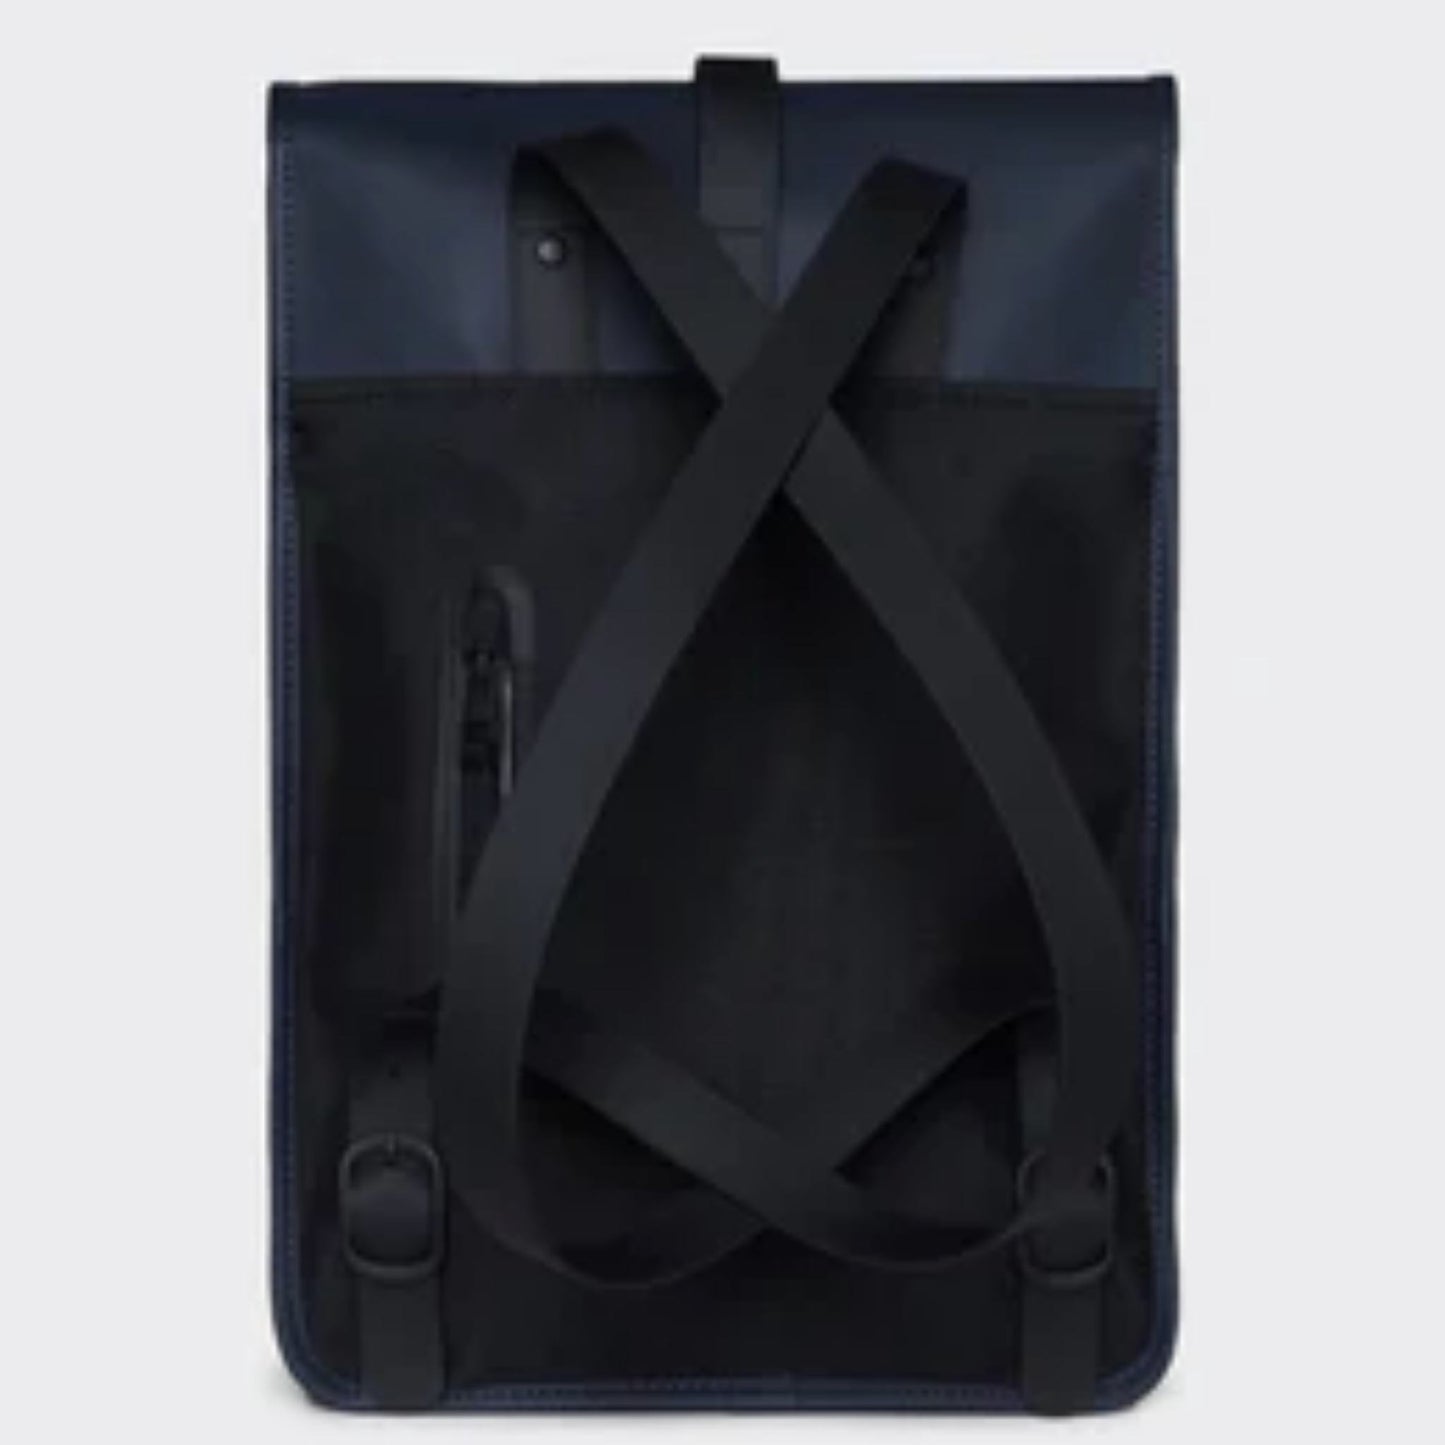 RAINS - Backpack Mini